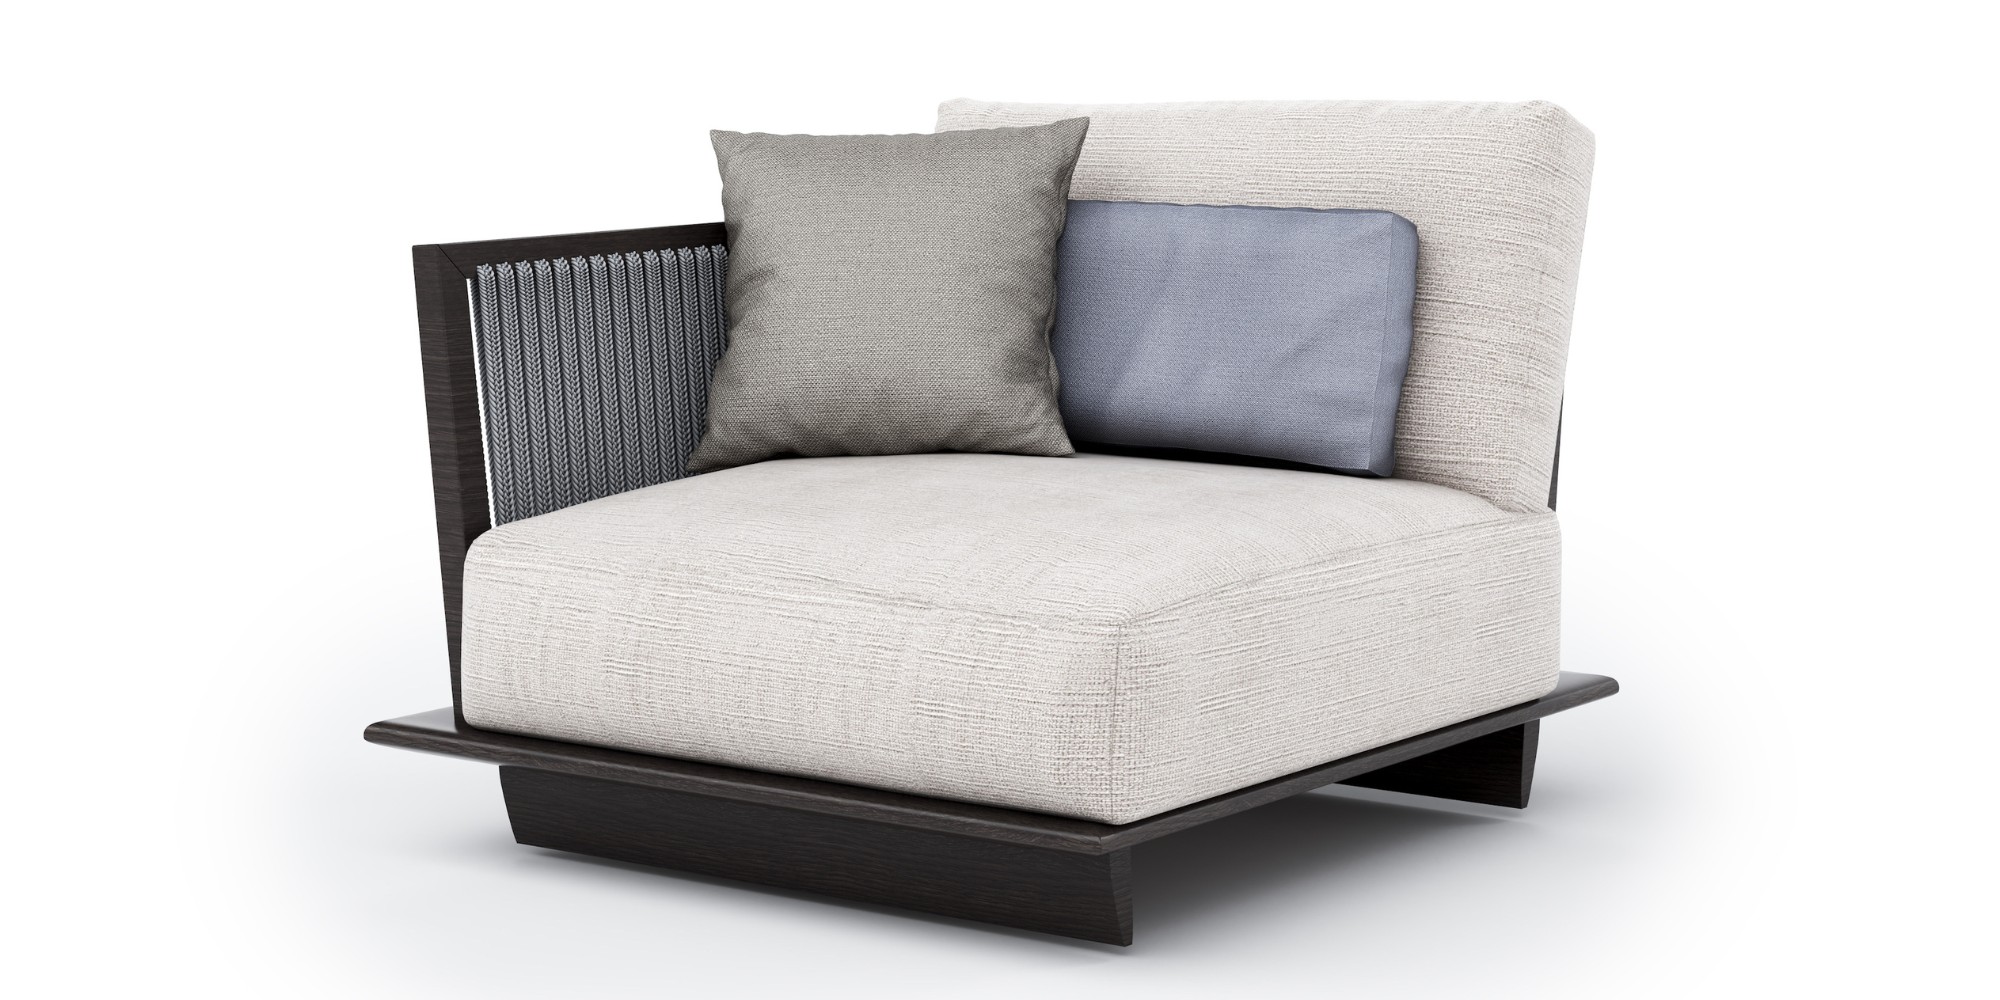 Azur Modular Sofa in Outdoor Modular Sofas for Azur collection